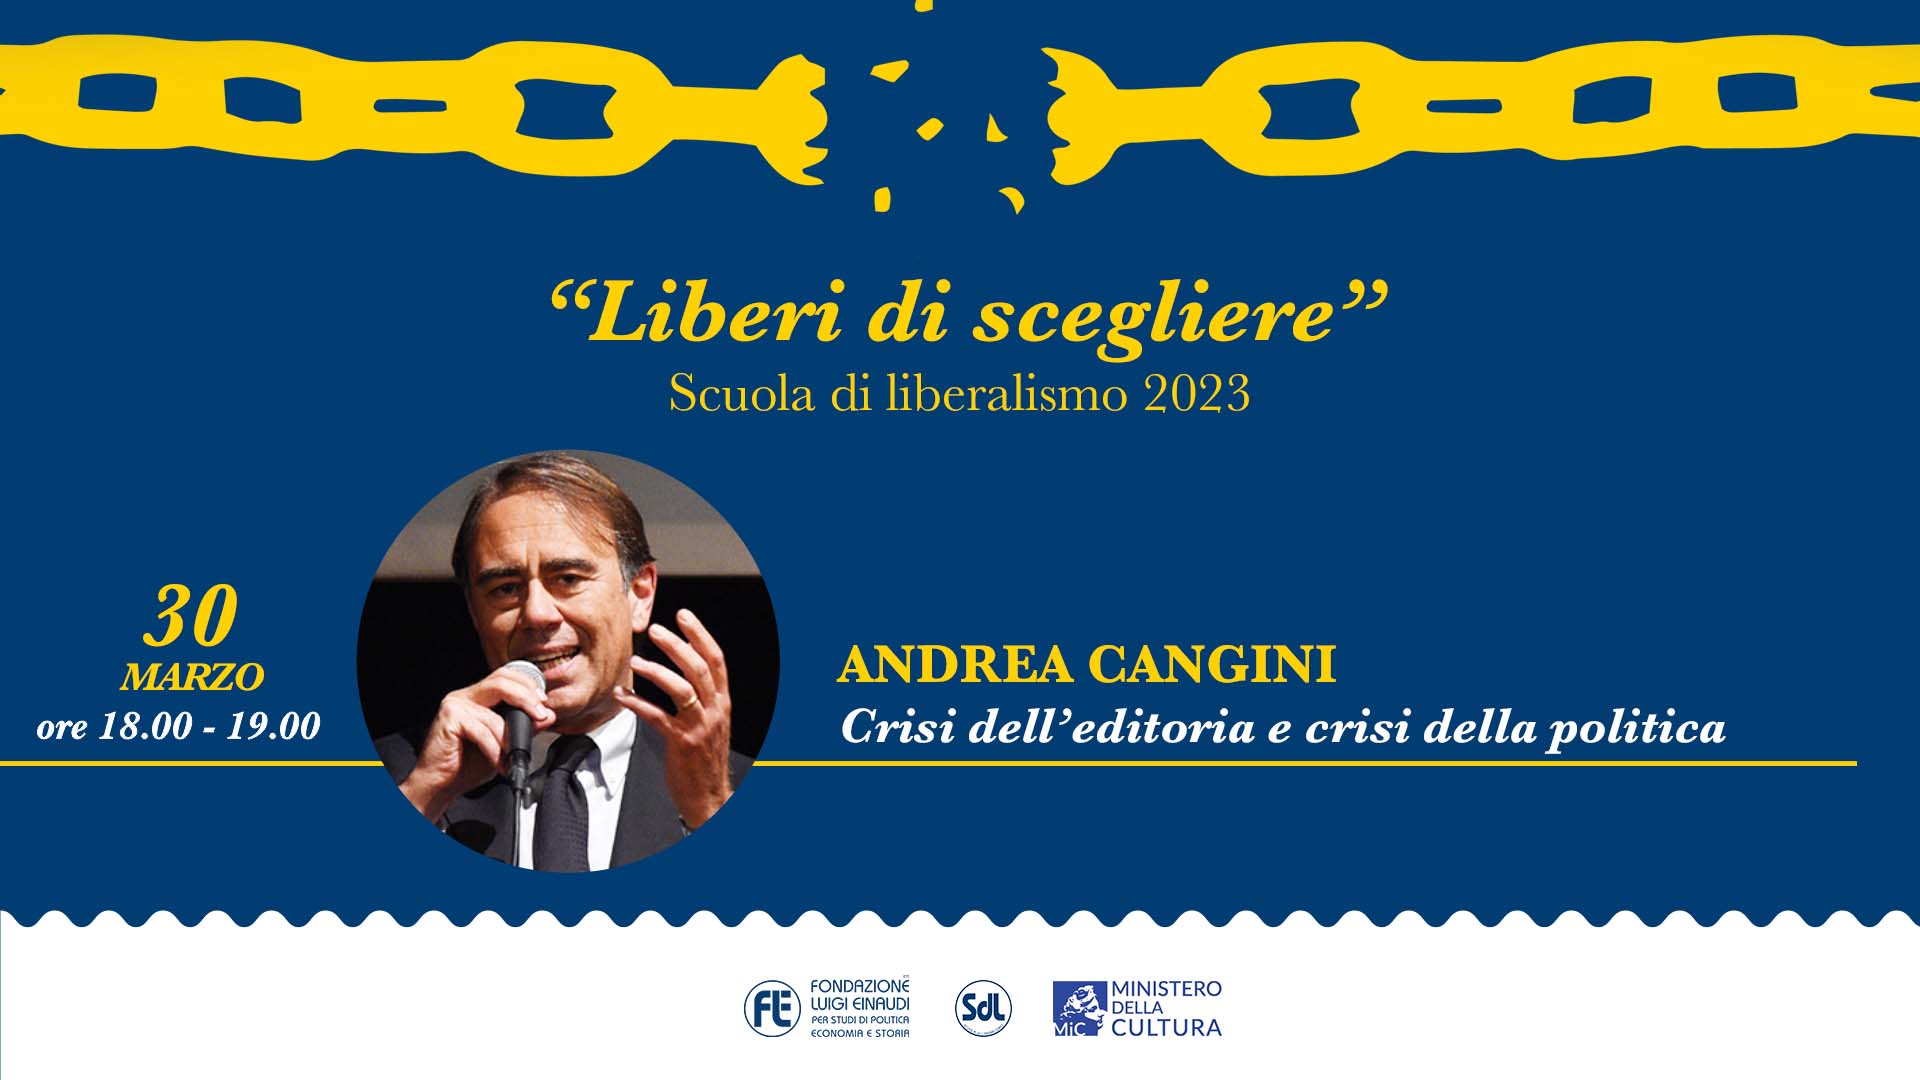 Scuola di Liberalismo 2023 – Andrea Cangini, Crisi dell’editoria e crisi della politica